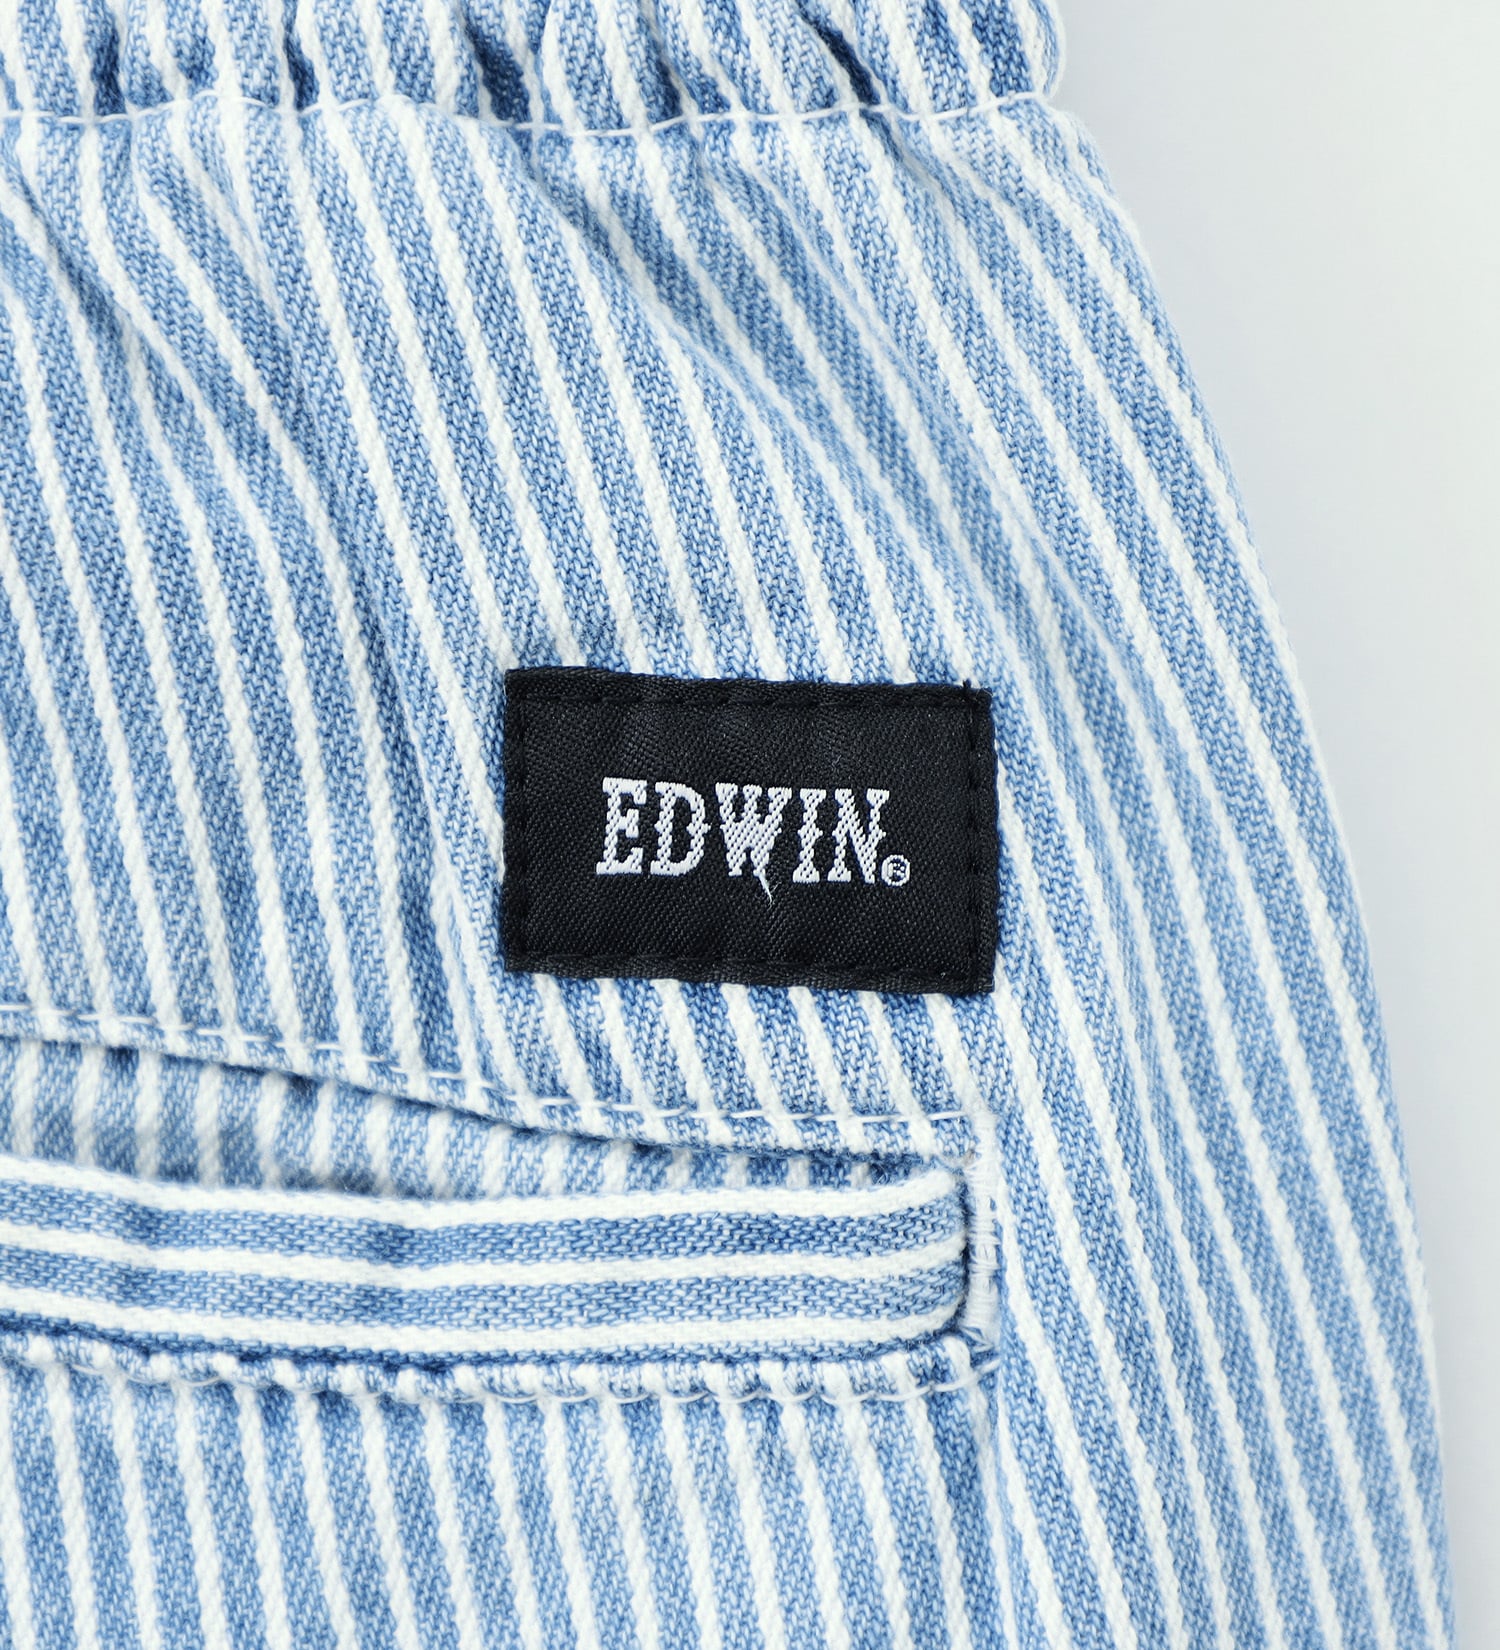 EDWIN(エドウイン)の【BLACKFRIDAY】EDWIN イージー ワイドテーパードパンツ【アウトレット店舗・WEB限定】|パンツ/パンツ/メンズ|ヒッコリー